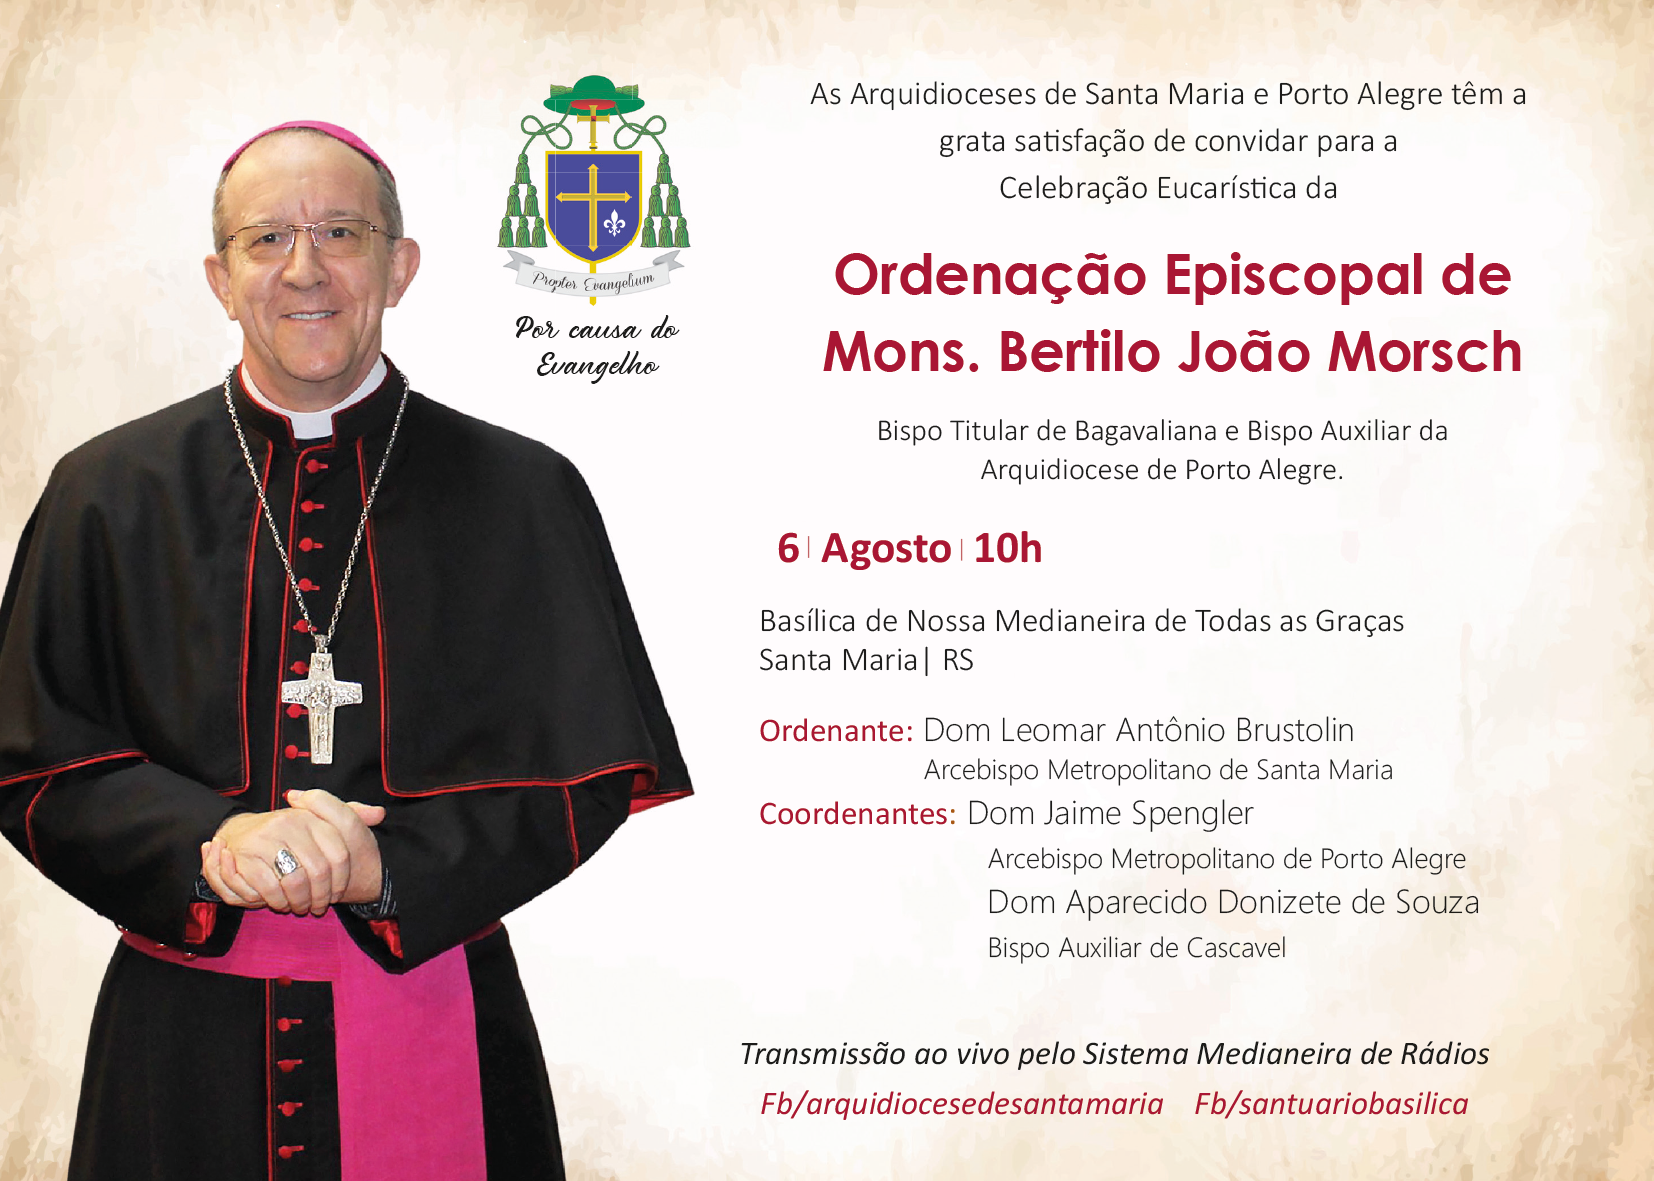 Ordenação Episcopal de Monsenhor Bertilo João Morsch acontece neste sábado 